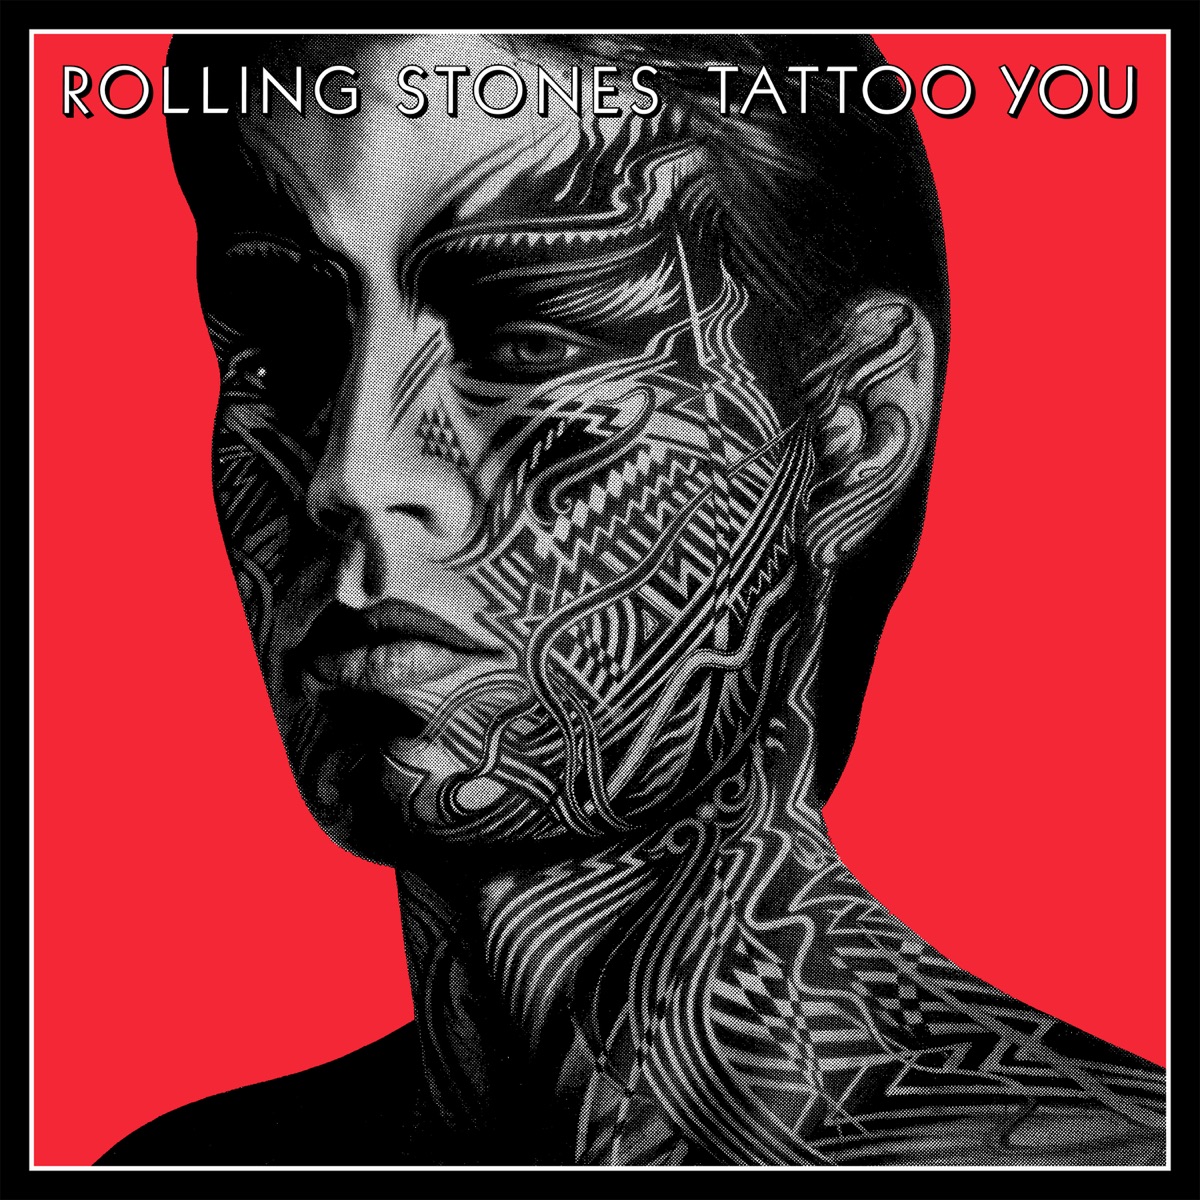 Tattoo You của The Rolling Stones trên Apple Music - The Rolling Stones Tattoo You trên Apple Music 2024: Cùng khám phá lại với album kinh điển Tattoo You của The Rolling Stones với phiên bản mới trên Apple Music. Với chất lượng âm thanh tuyệt vời và khả năng phát trực tuyến, bạn có thể dễ dàng truy cập và thưởng thức những ca khúc kinh điển của ban nhạc nước Anh này. Hãy truy cập ngay bây giờ để cập nhật về Tattoo You của The Rolling Stones.